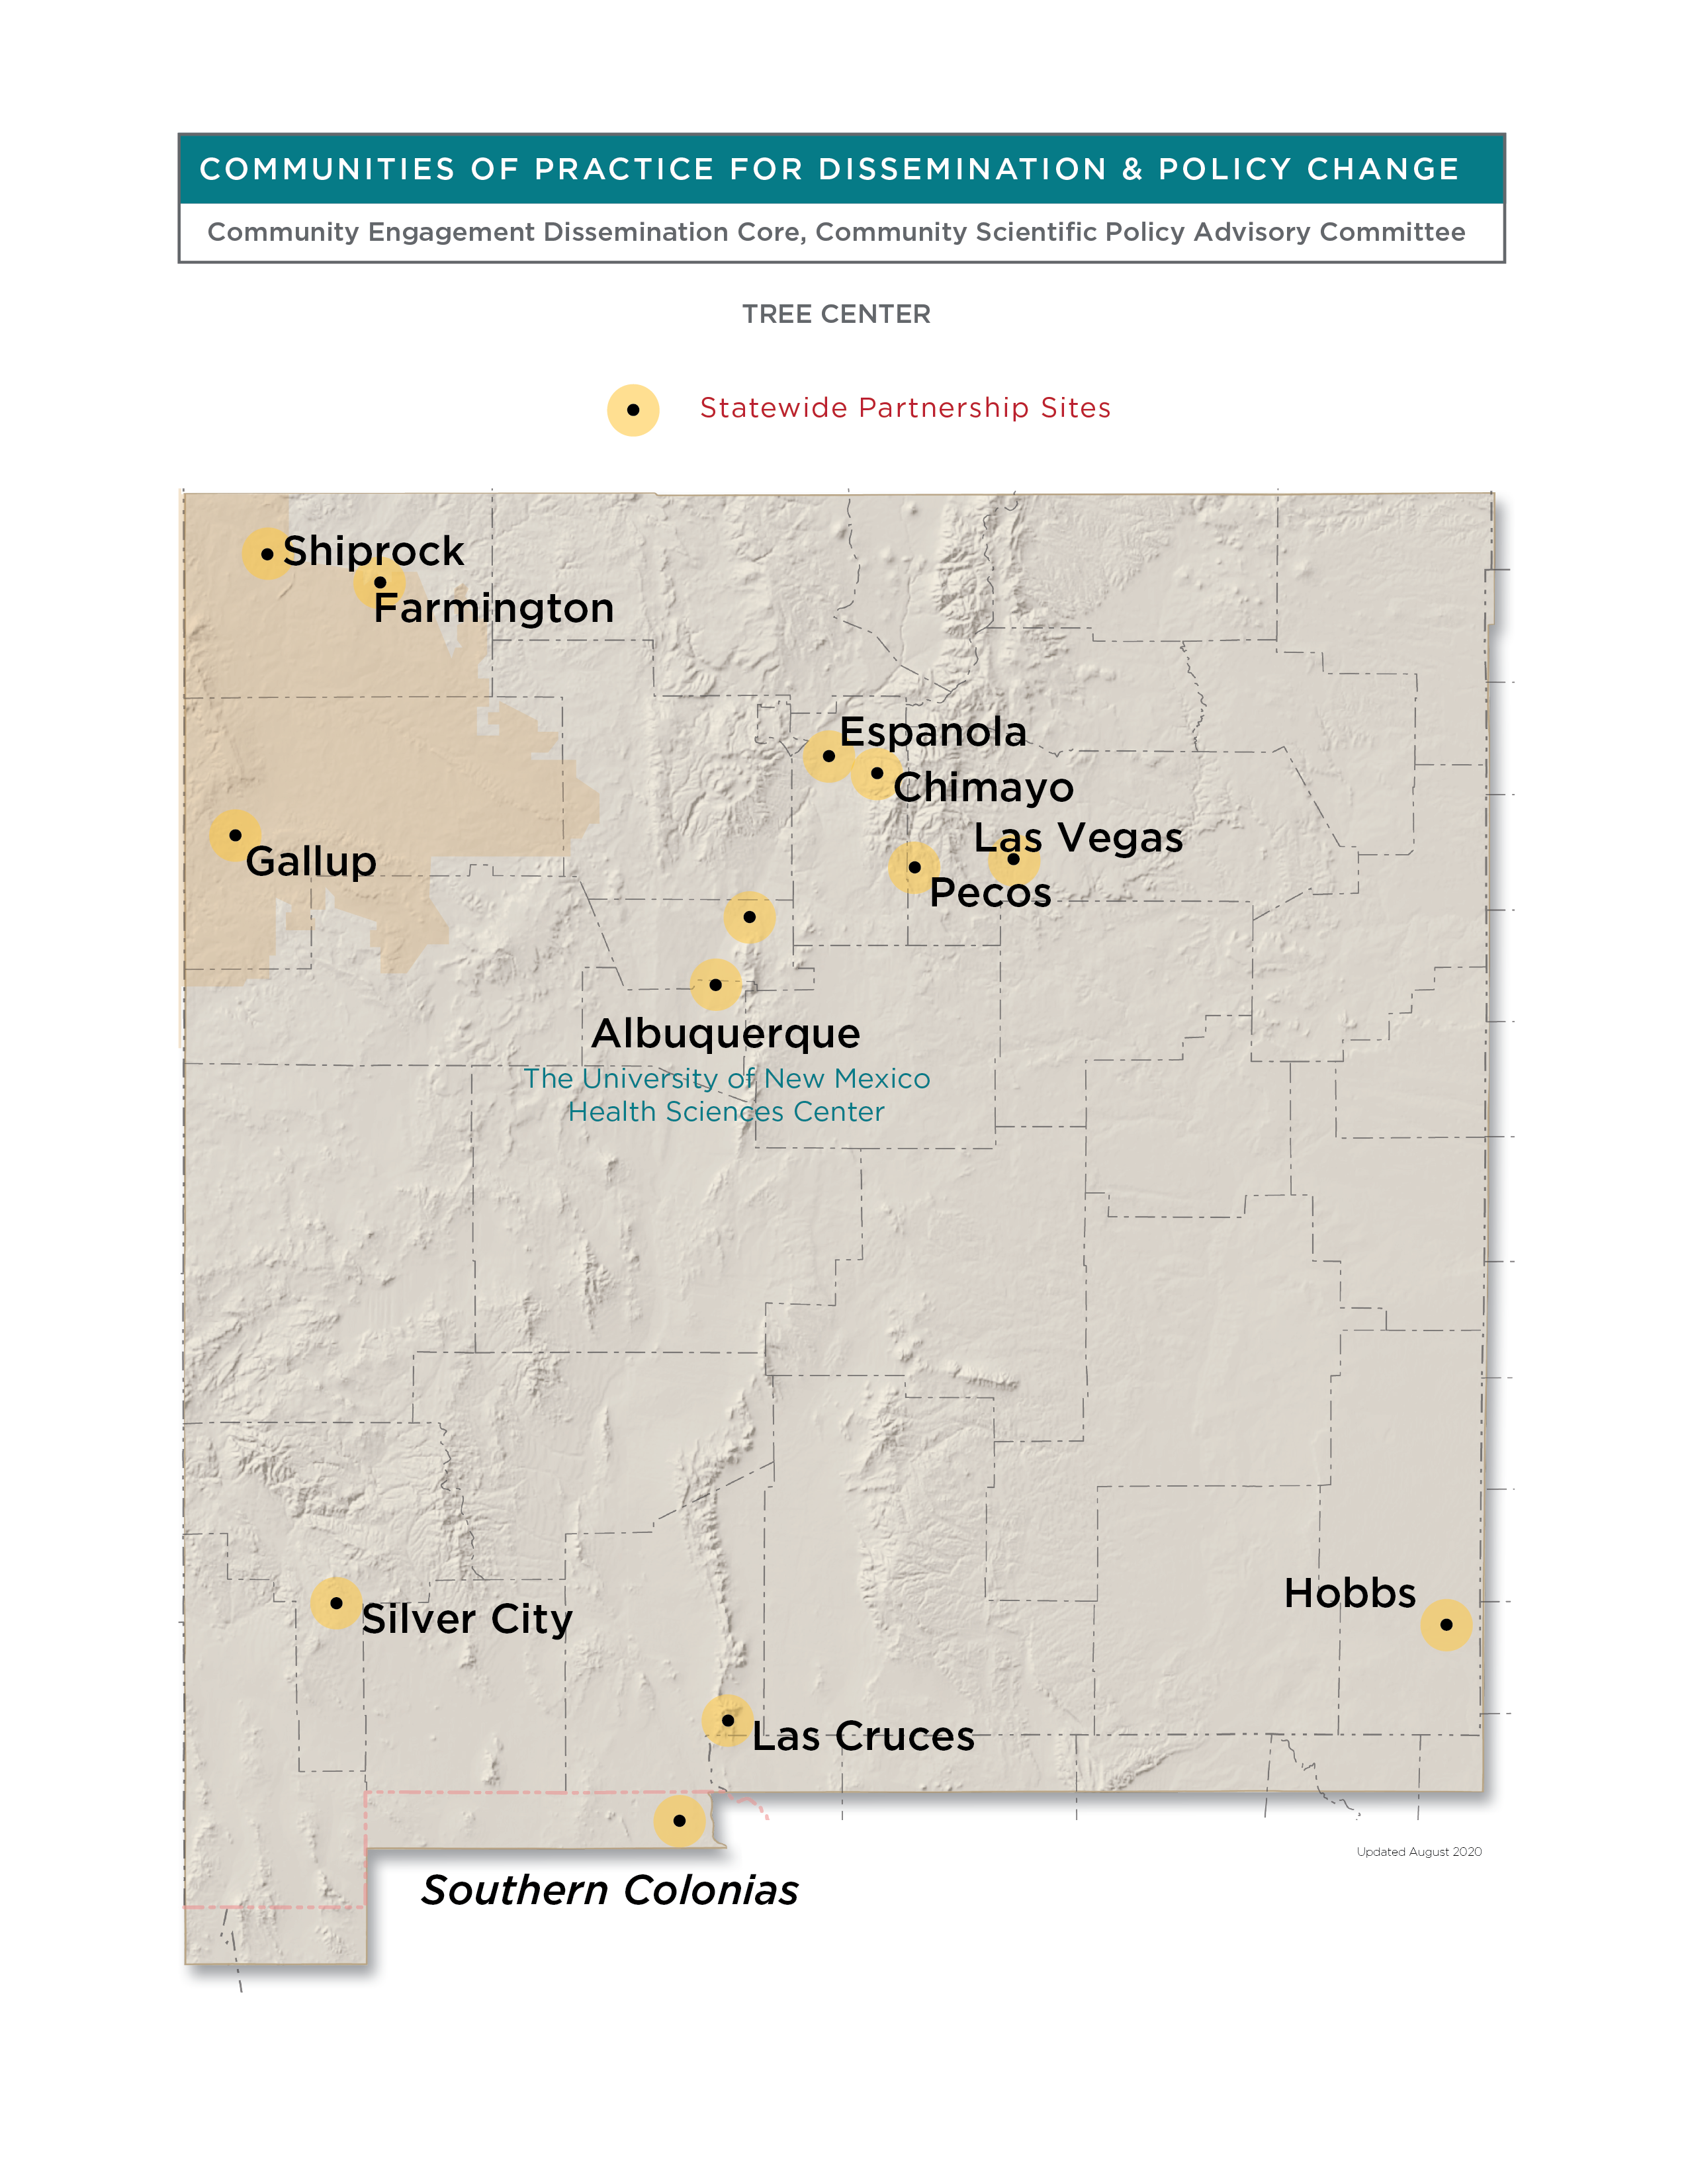 Mapa do UNM HSC CEDC do Novo México.